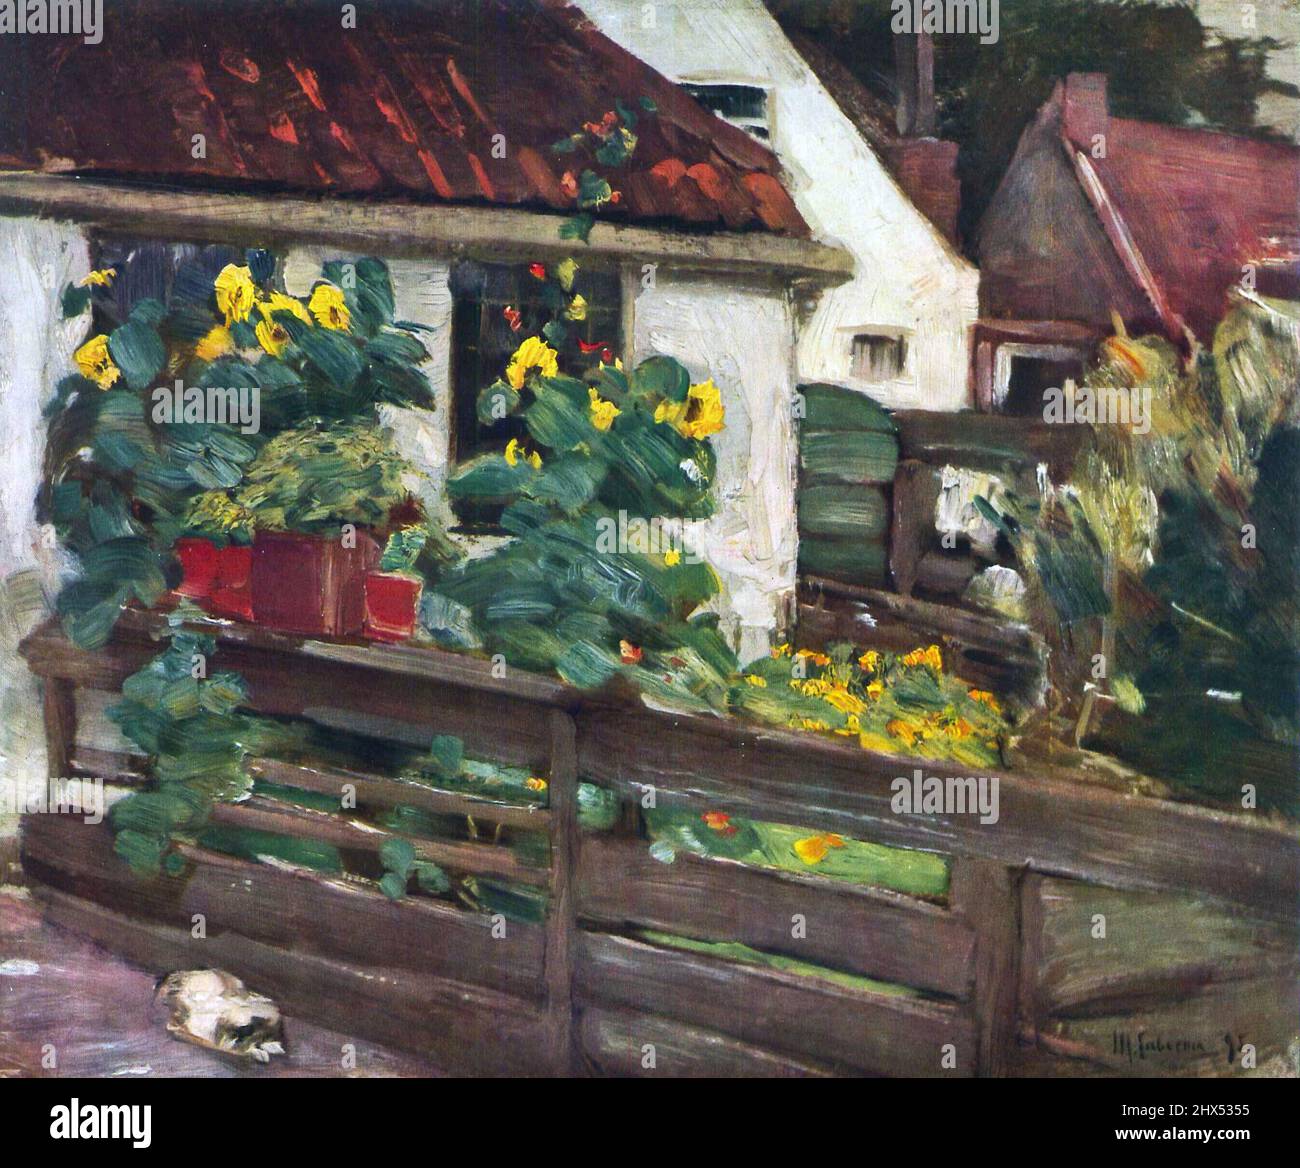 Max Liebermann; Garten mit Sonnenblumen (1895), jardin avec tournesols, Ogród ze słonecznikami, Jardín con girasoles, 马克思·利伯曼, 有向日葵的花園, מקס ליברמן Banque D'Images